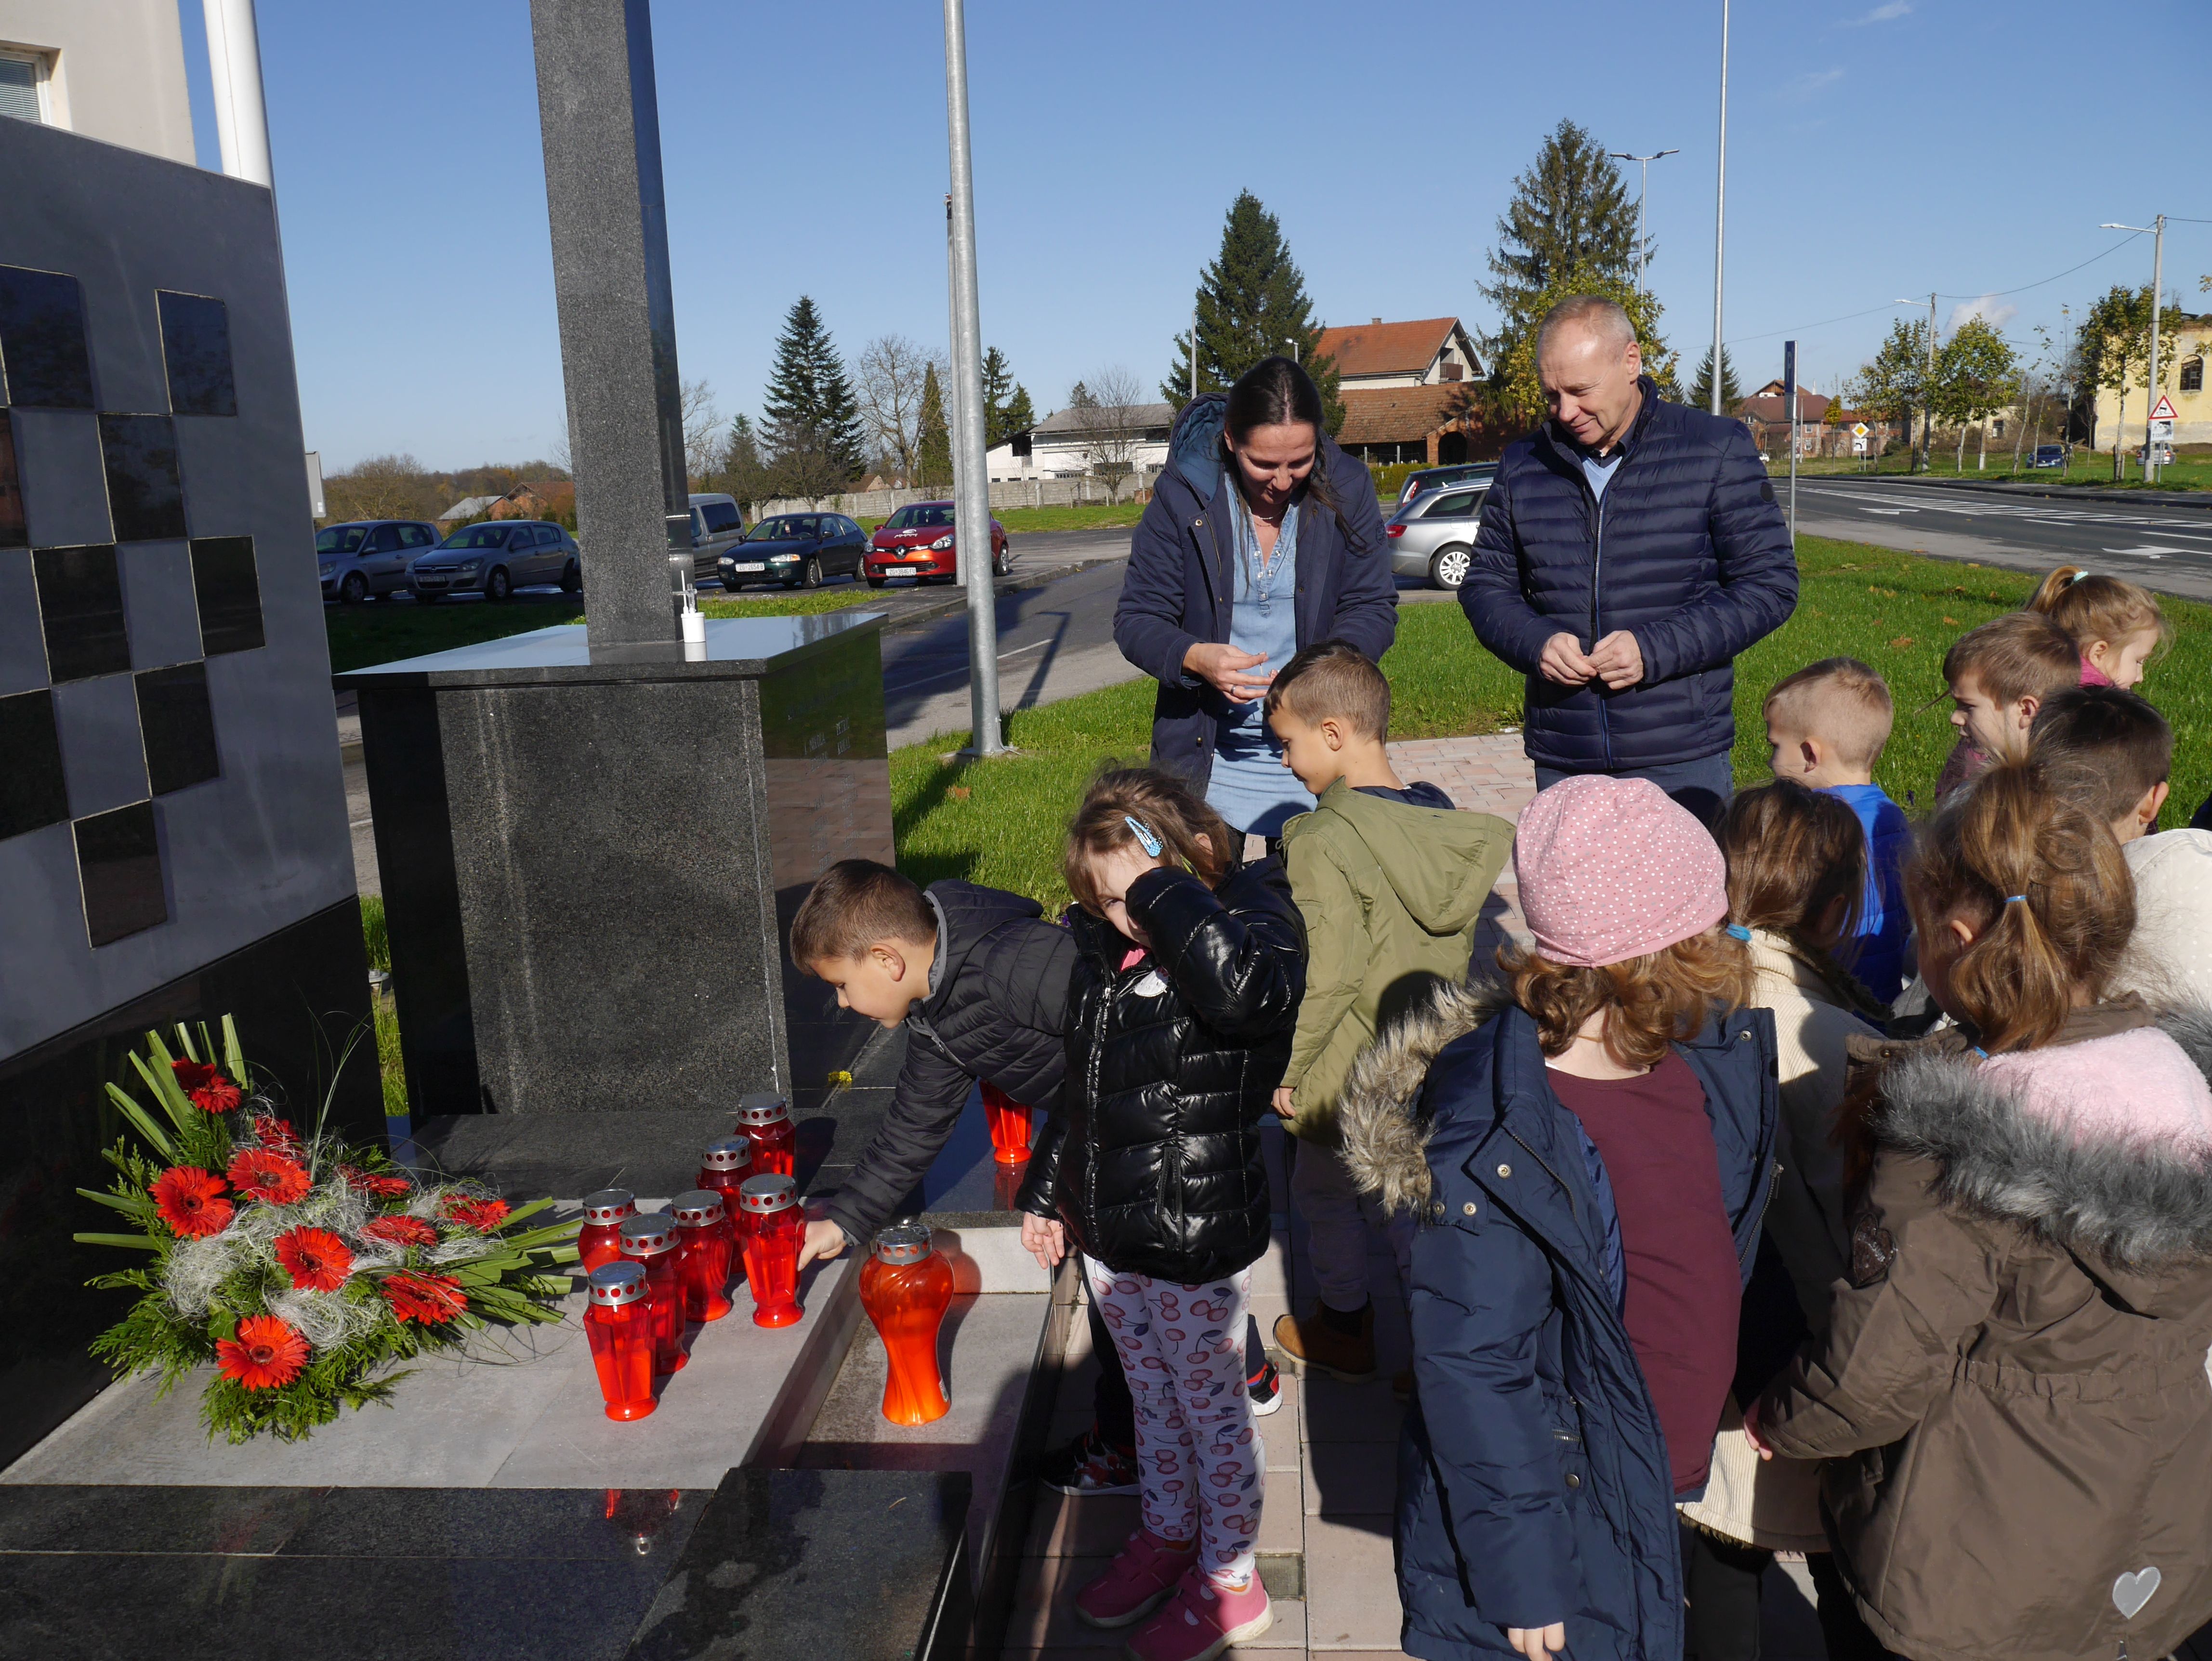 Obilježavanje Dana sjećanja na žrtvu Vukovara